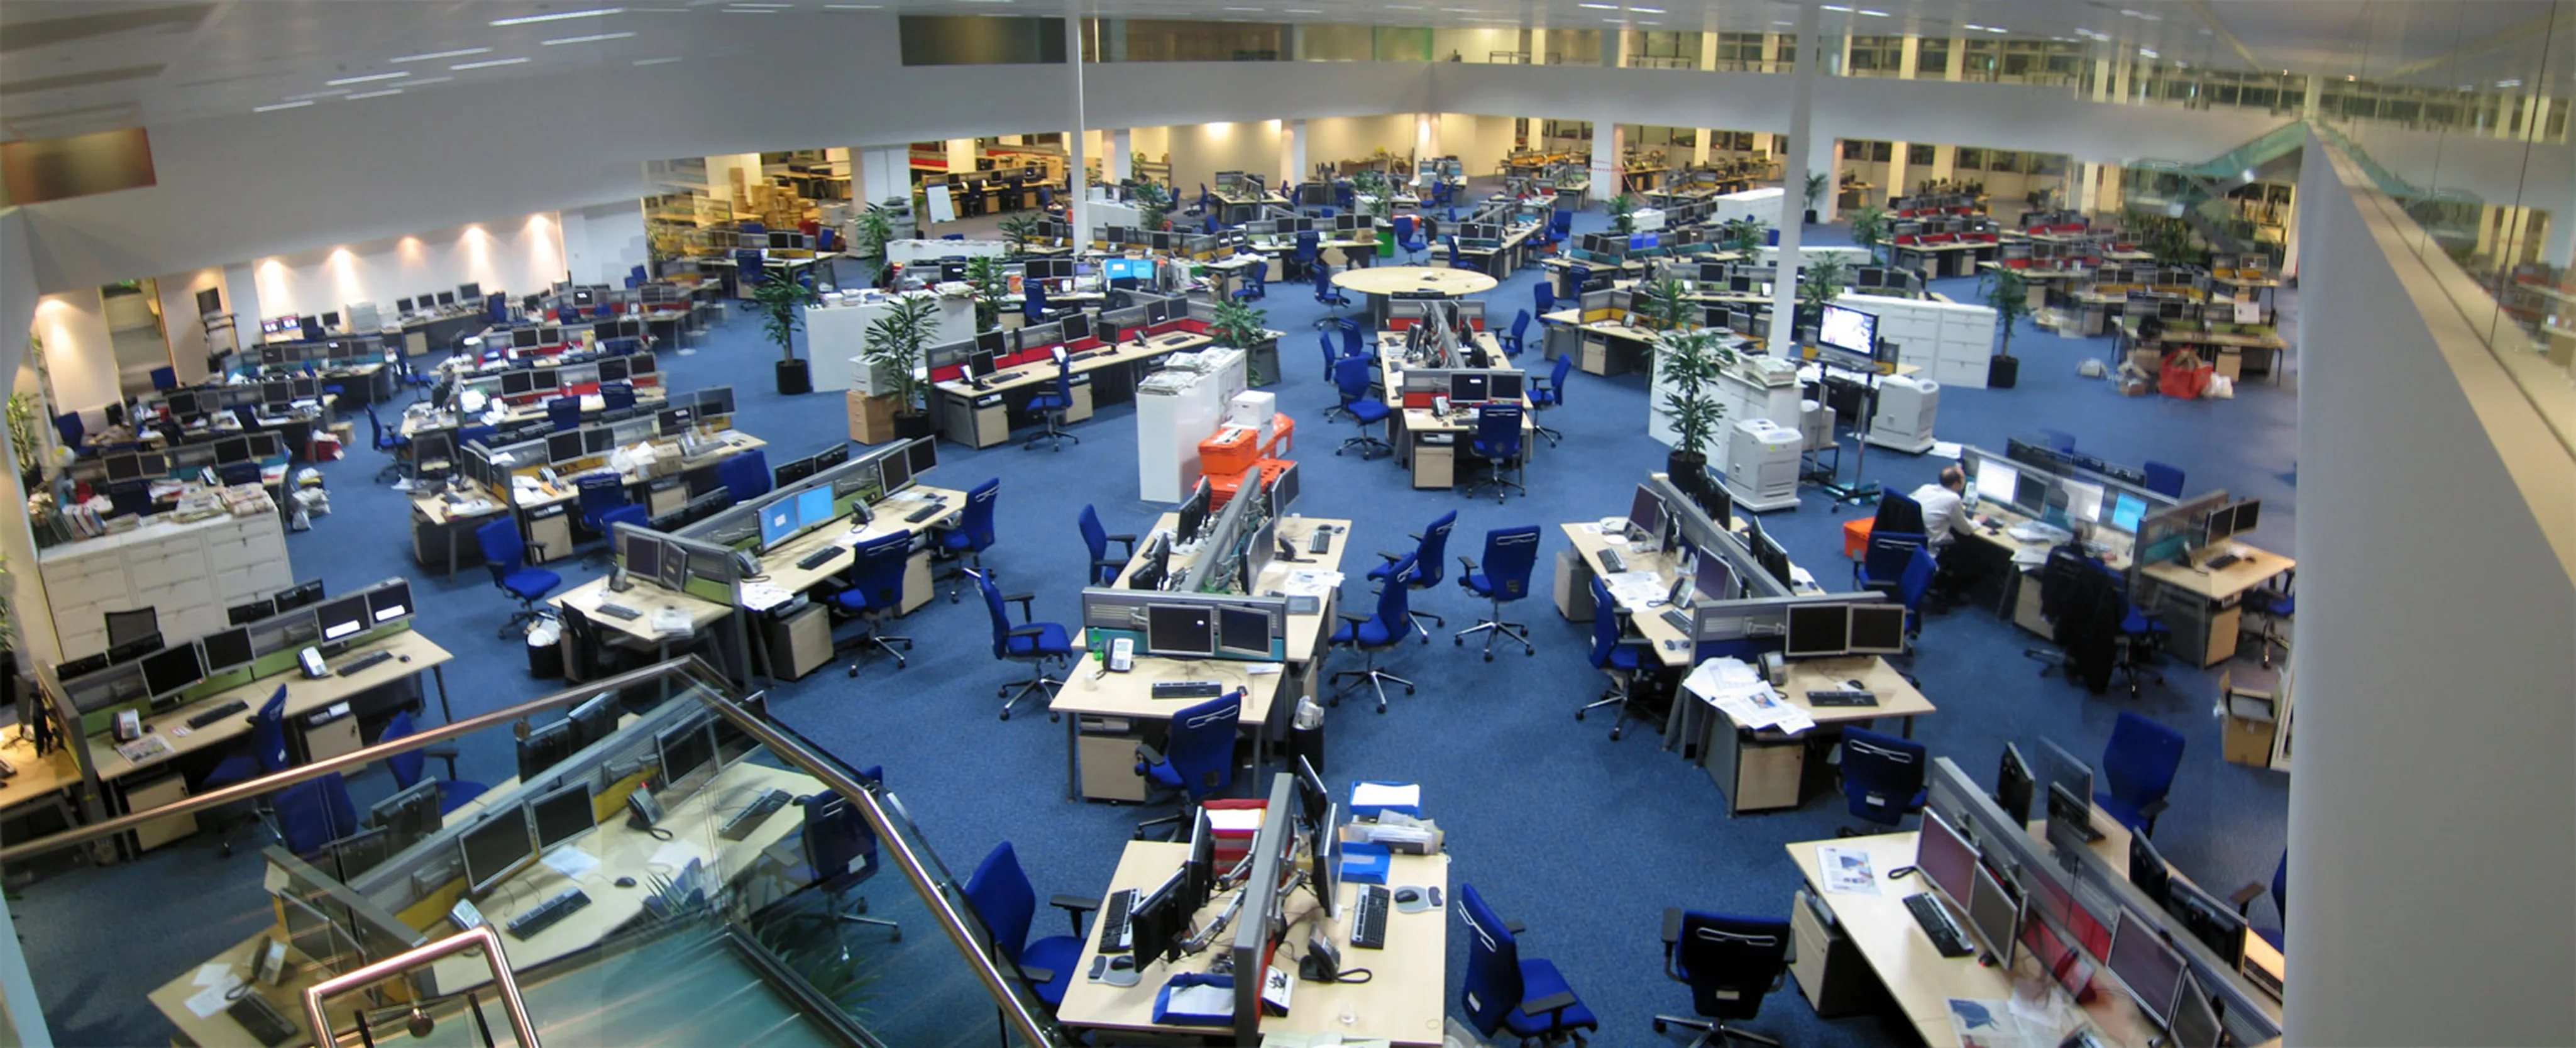 Esta foto muestra una gran sala de prensa abierta con espacio suficiente para acoger a unos 200 empleados.